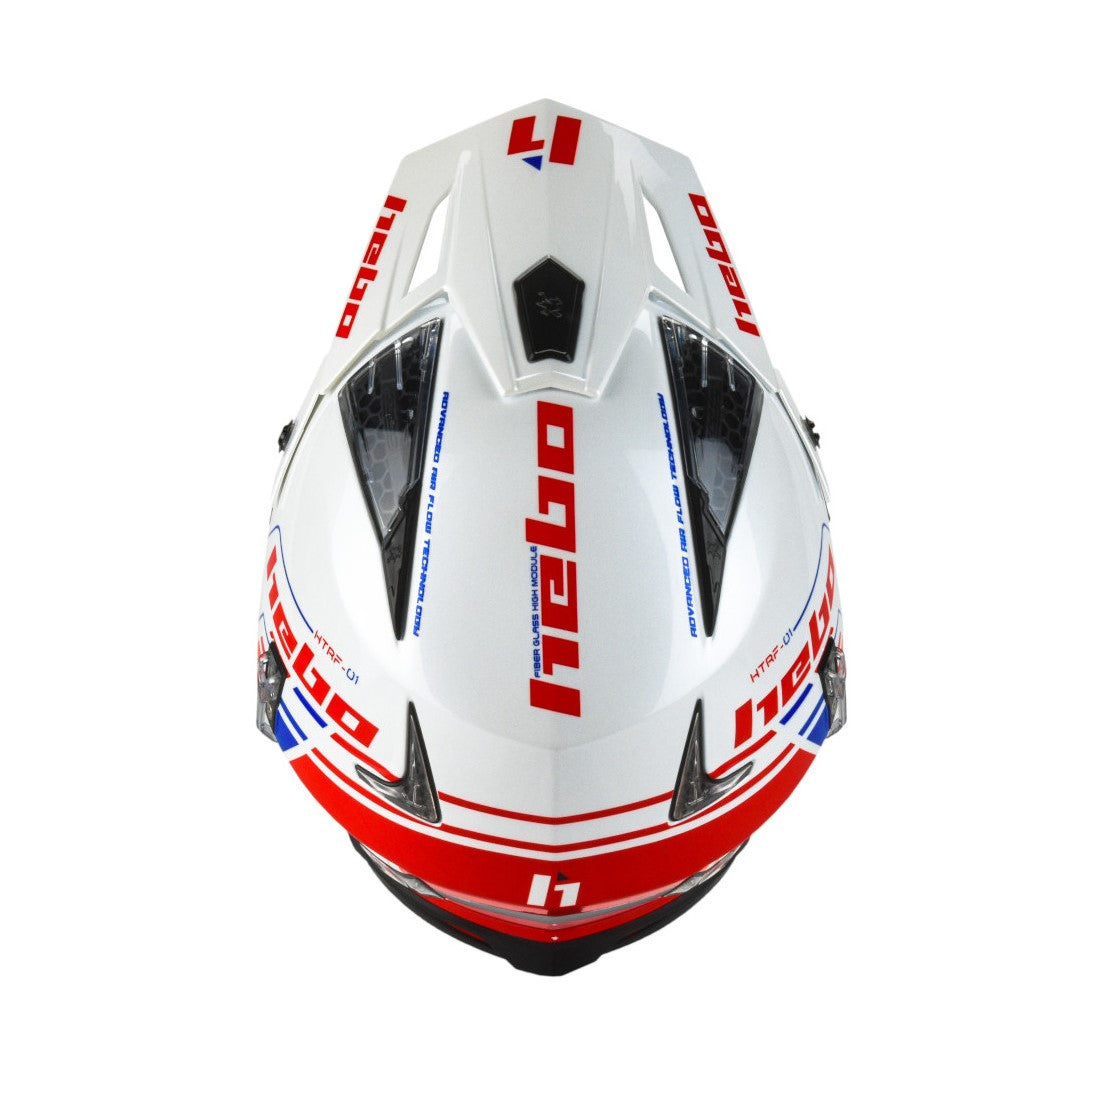 HEBO Helmet Zone 4 Contact